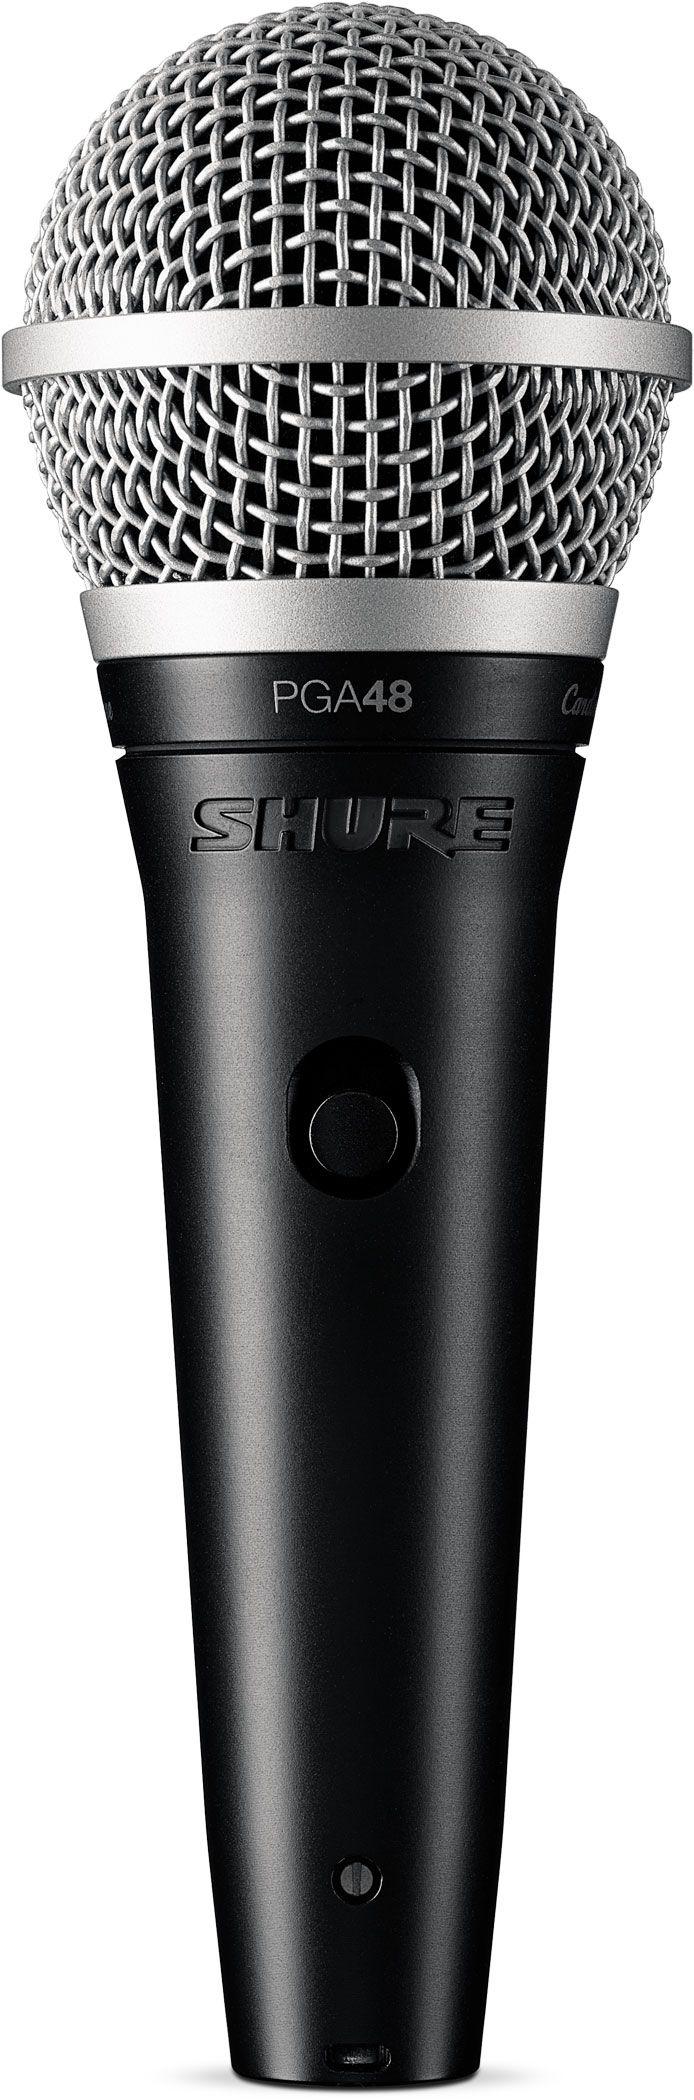 Shure - Micrófono Dinámico de Mano, Conexión: QTR Mod.PGA48-QTR_38